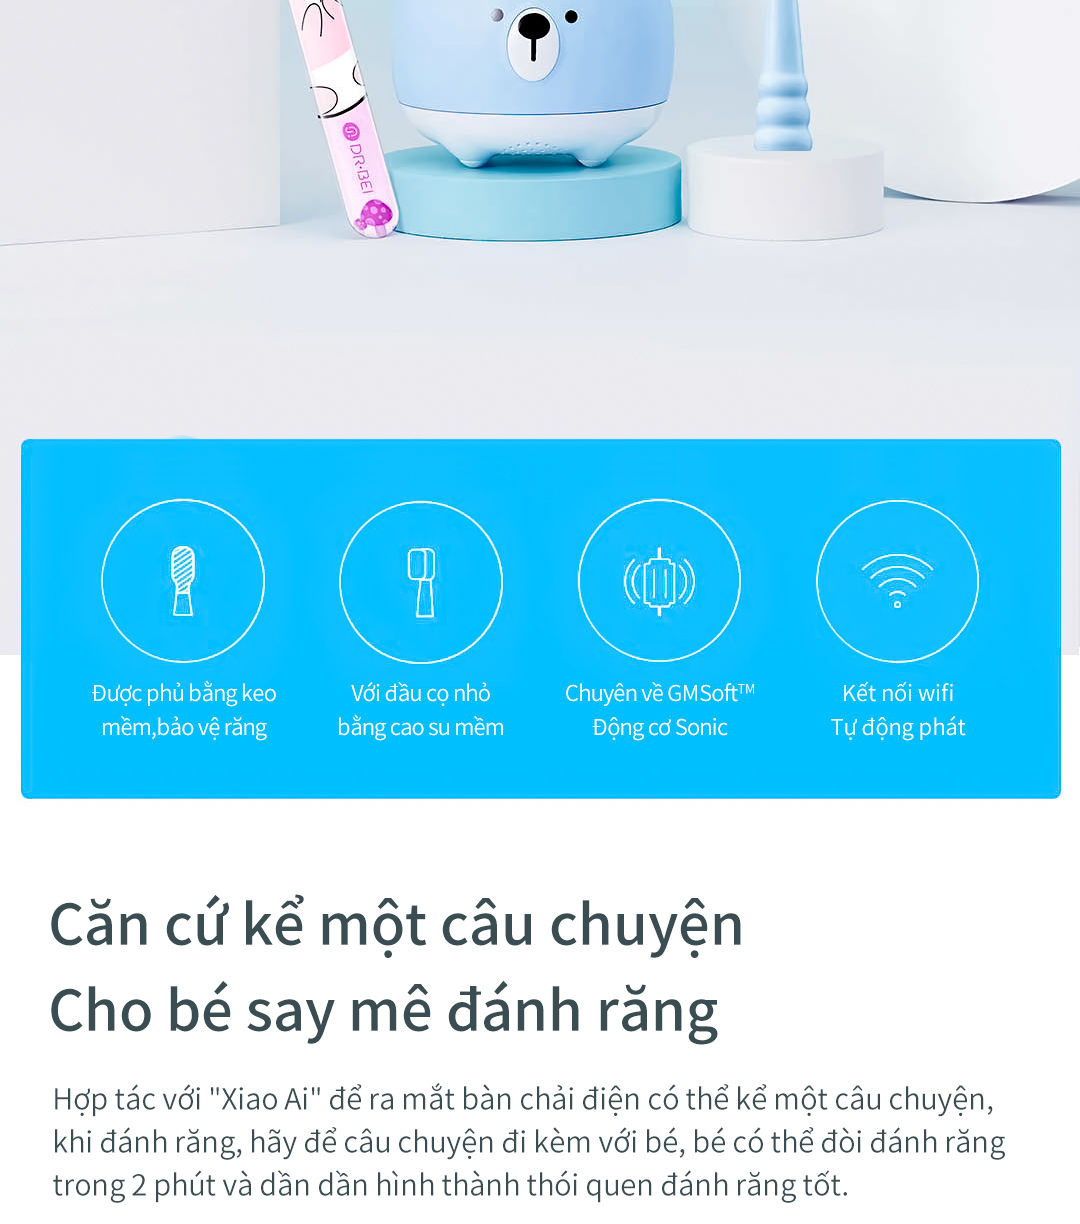 DEWA.VN - Chuyên hàng hitech Trang mua sắm trực tuyến sản phẩm công nghệ, phụ kiện công nghệ, loa, tai nghe, giúp bạn bắt kịp xu hướng mới.